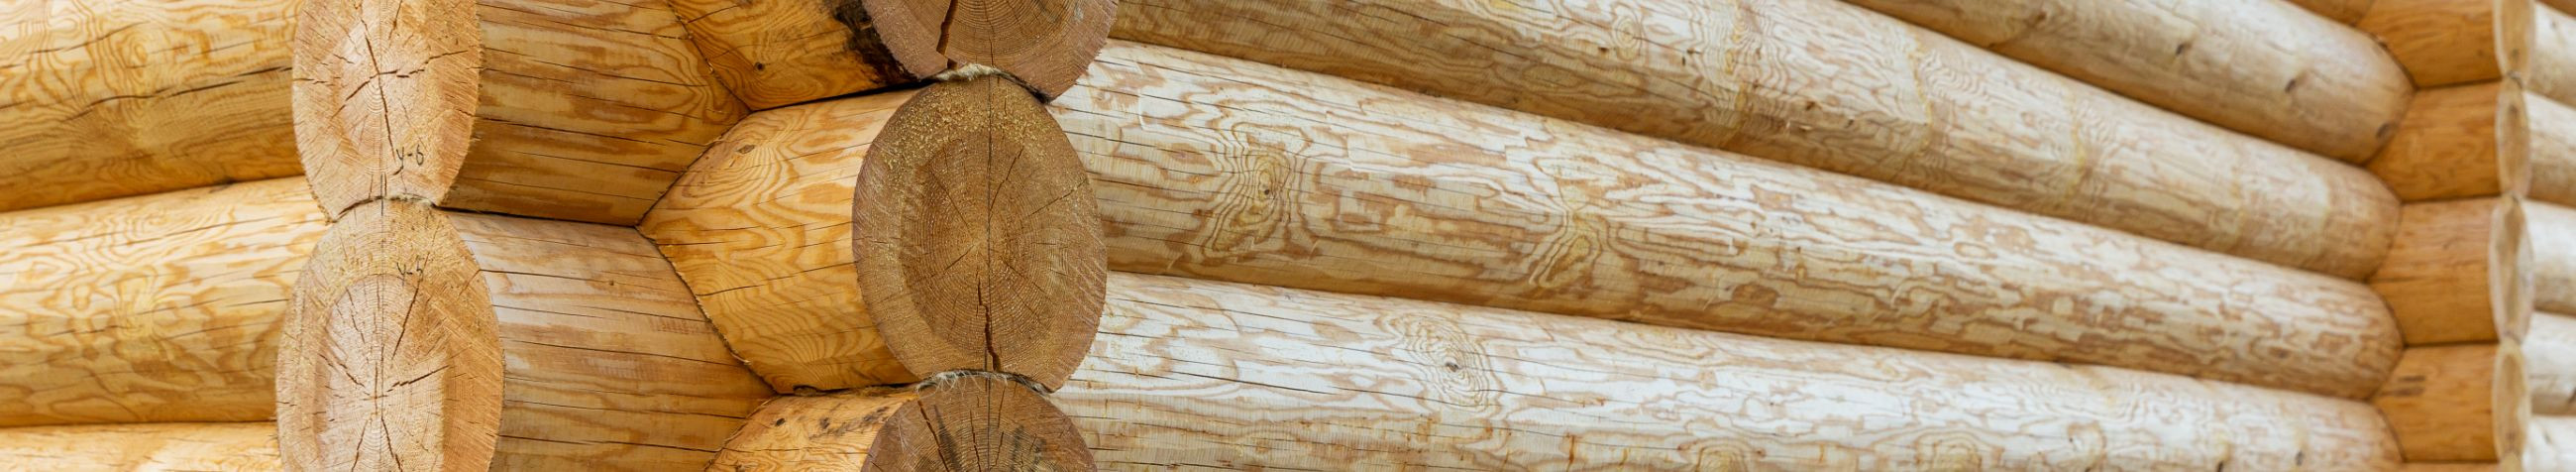 Oleme spetsialiseerunud traditsioonilisele puidutööle, luues eritellimusel puidust mänguasju, aiamaju ja treppe, taastades samal ajal ka ajaloolisi puitkonstruktsioone.